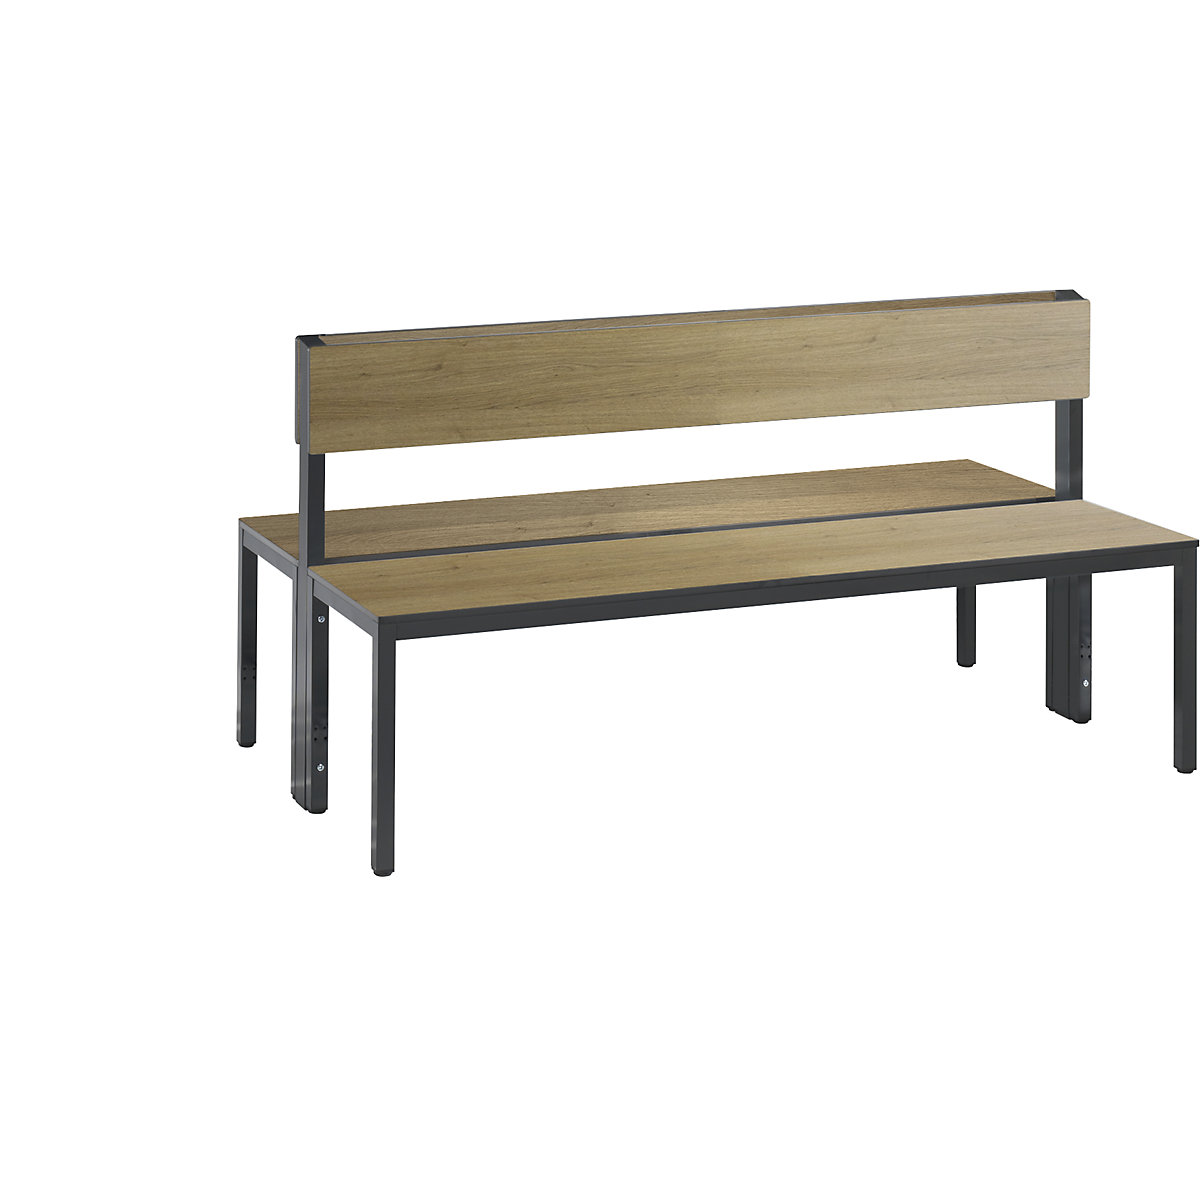 Šatňová lavica BASIC PLUS, dvojstranná – C+P, plocha sedadla HPL, polovysoká, dĺžka 1500 mm, vzor dub-1